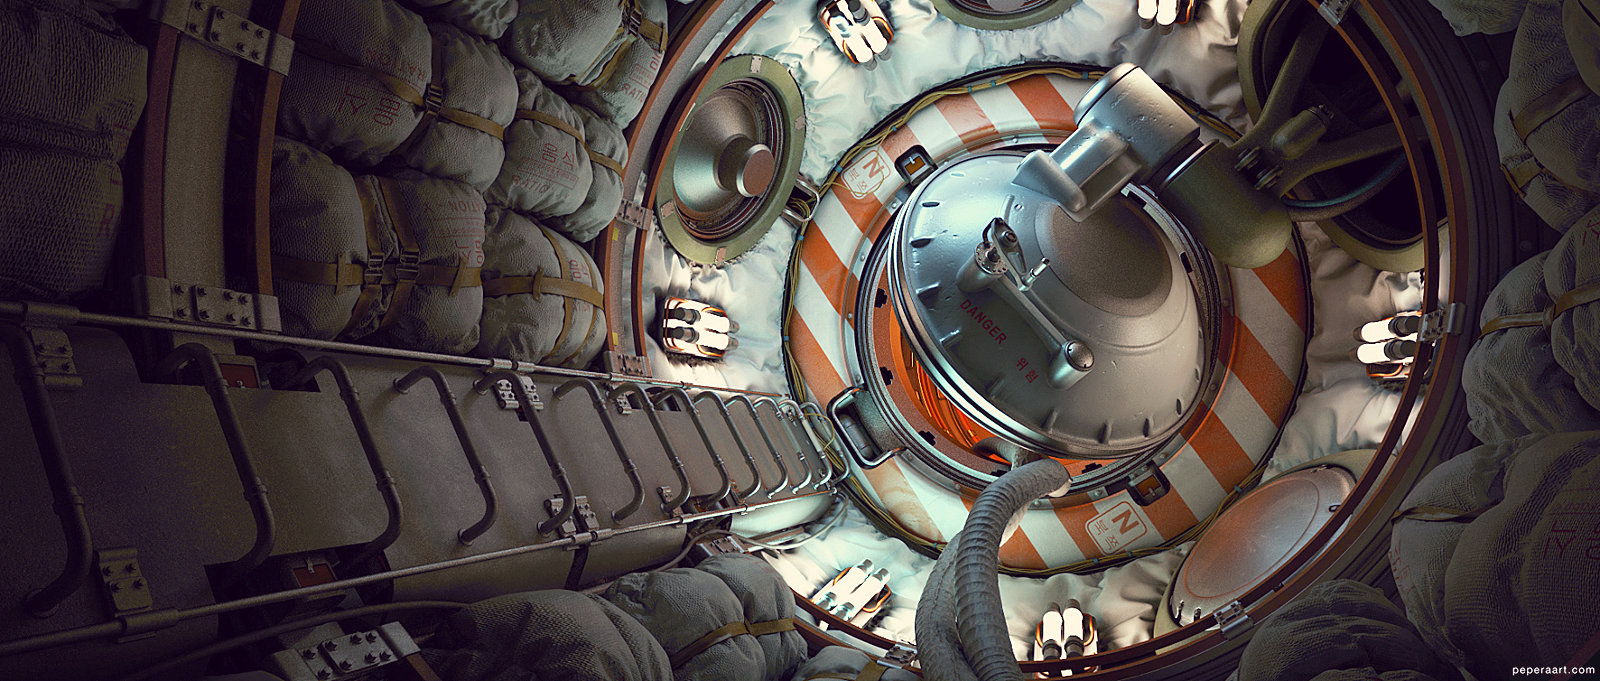 Stunning 3d Sci Fi Design By Paul Pepera 3d Artist